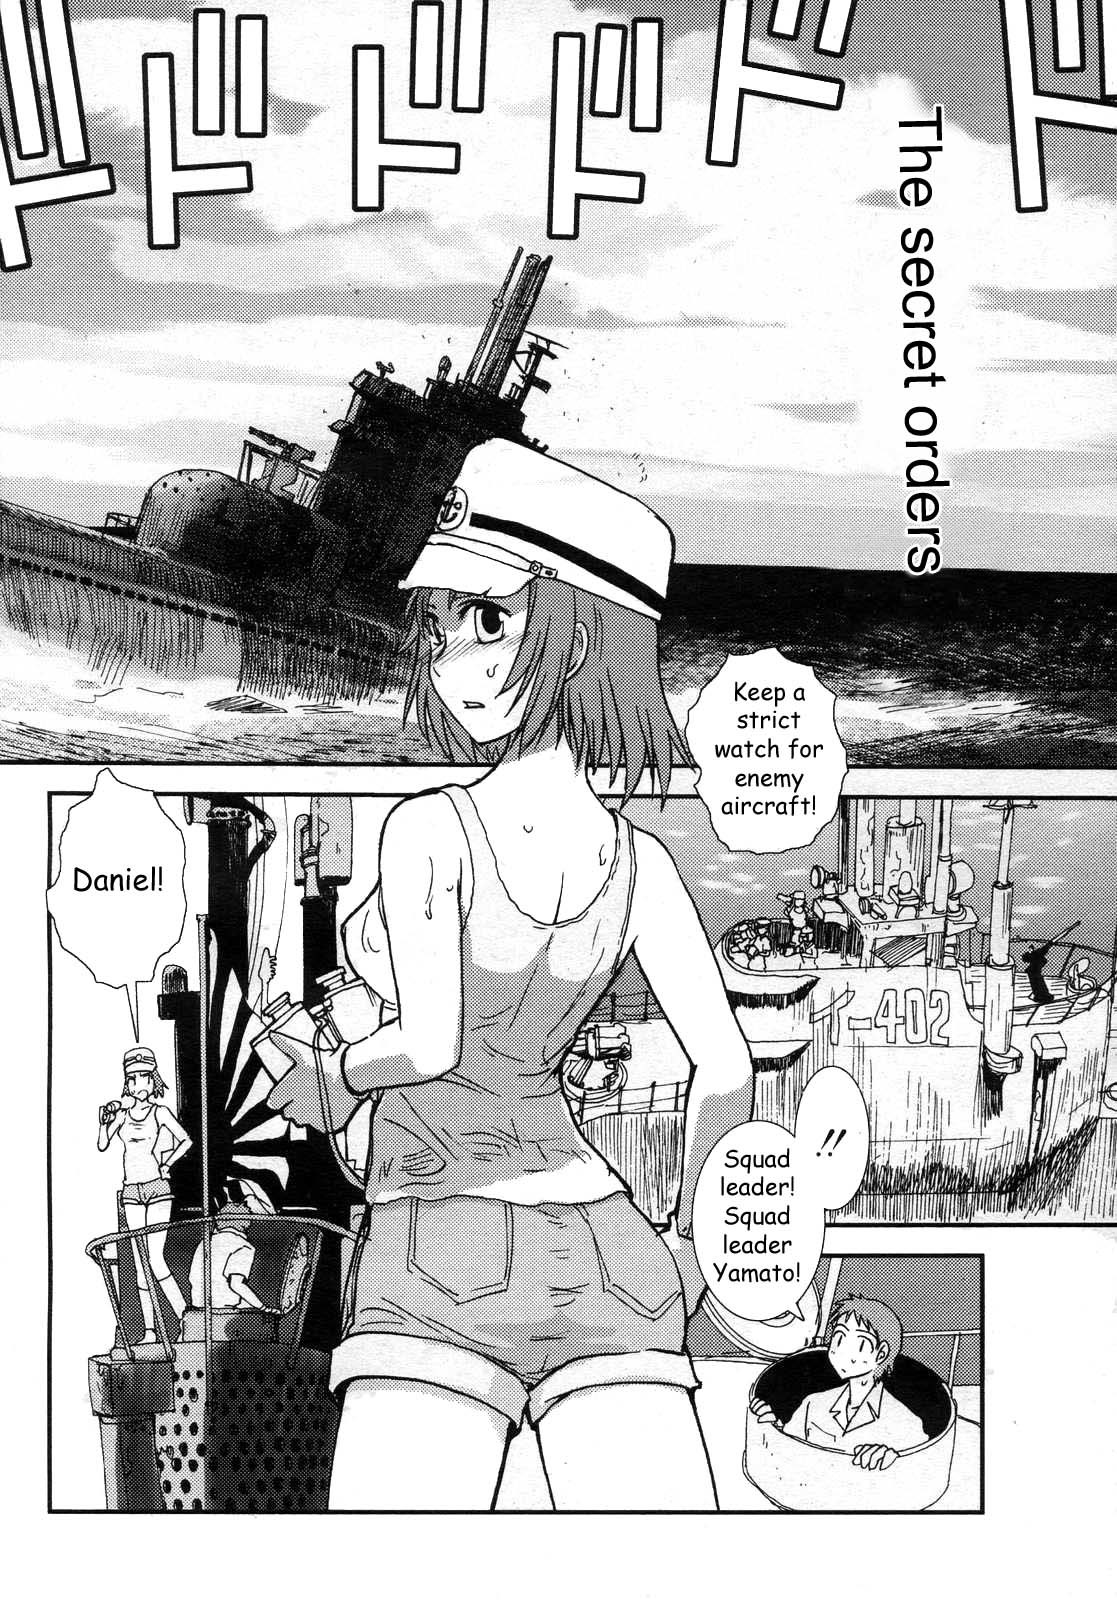 Mitsumei a.k.a. I-404 1 hentai manga